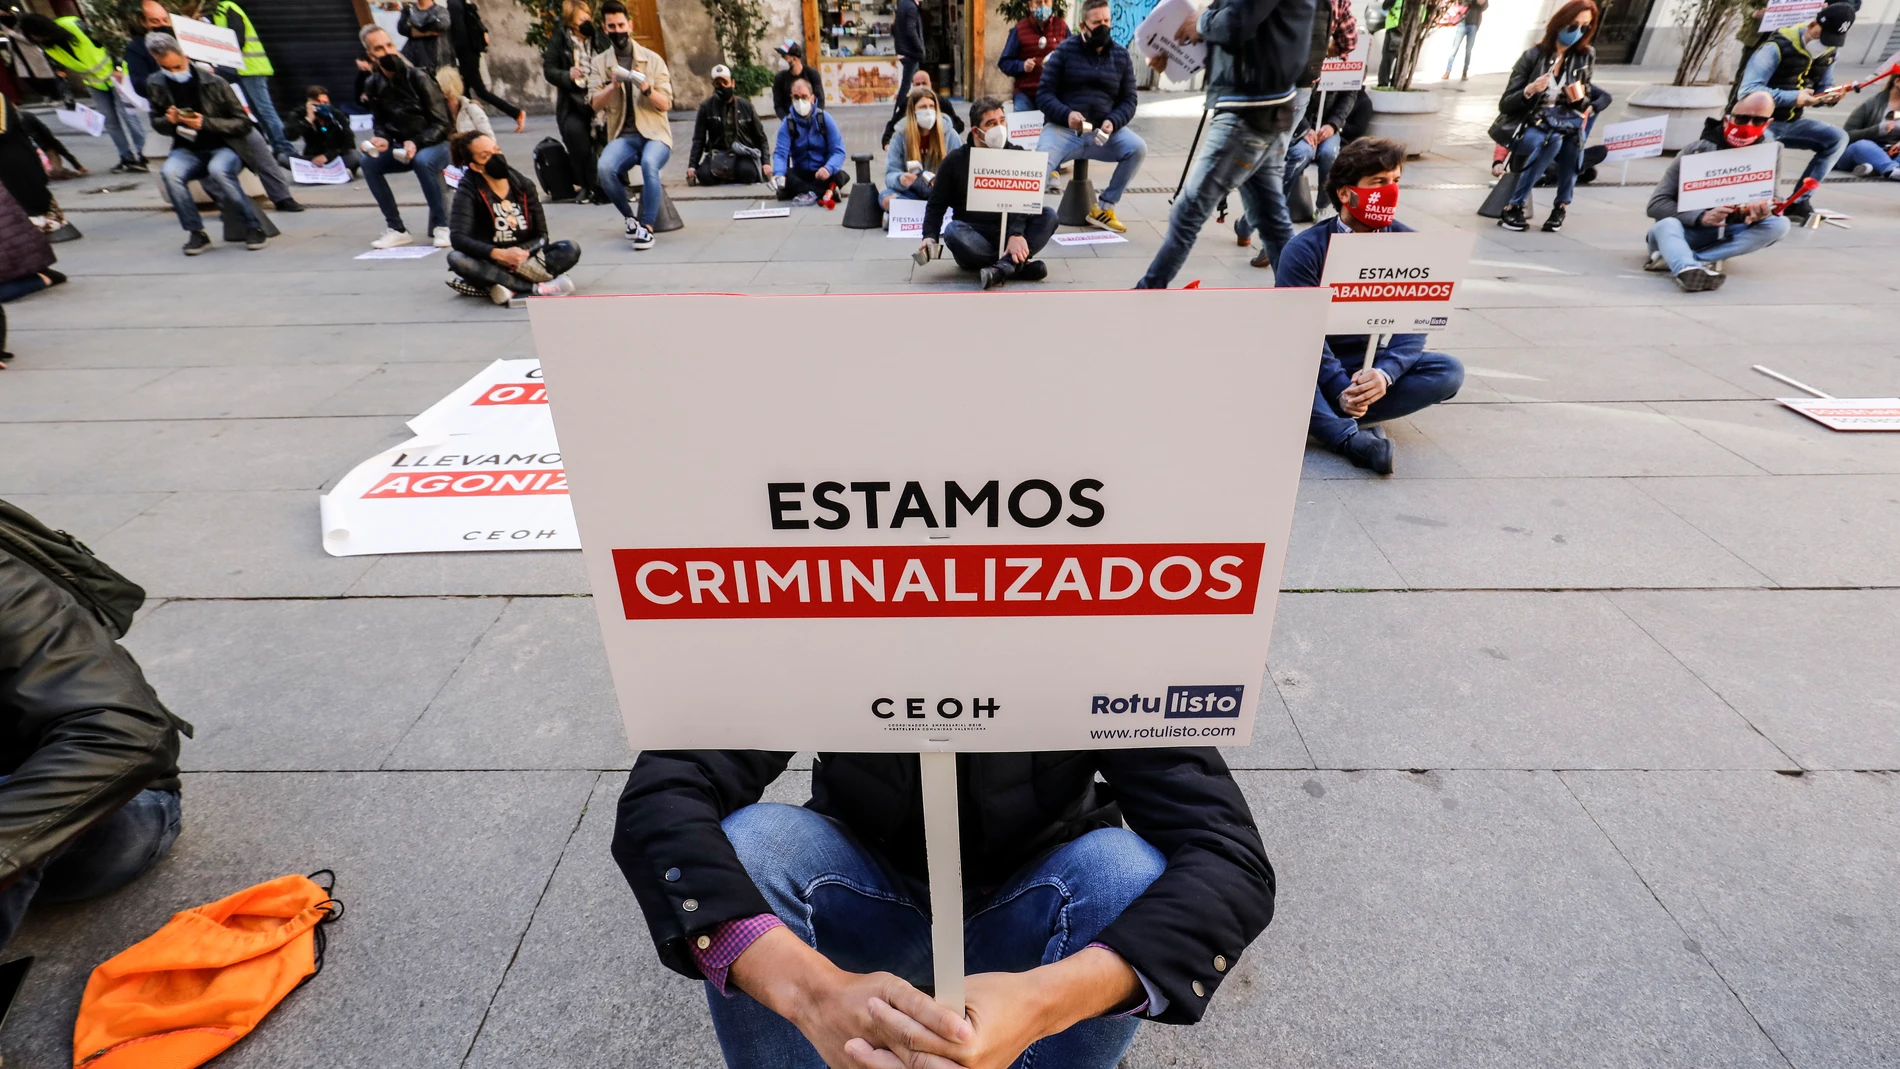 Una persona sostiene una pancarta donde se lee "Estamos criminalizados" durante una manifestación de hosteleros valencianos frente a las puertas del Palau de la Generalitat